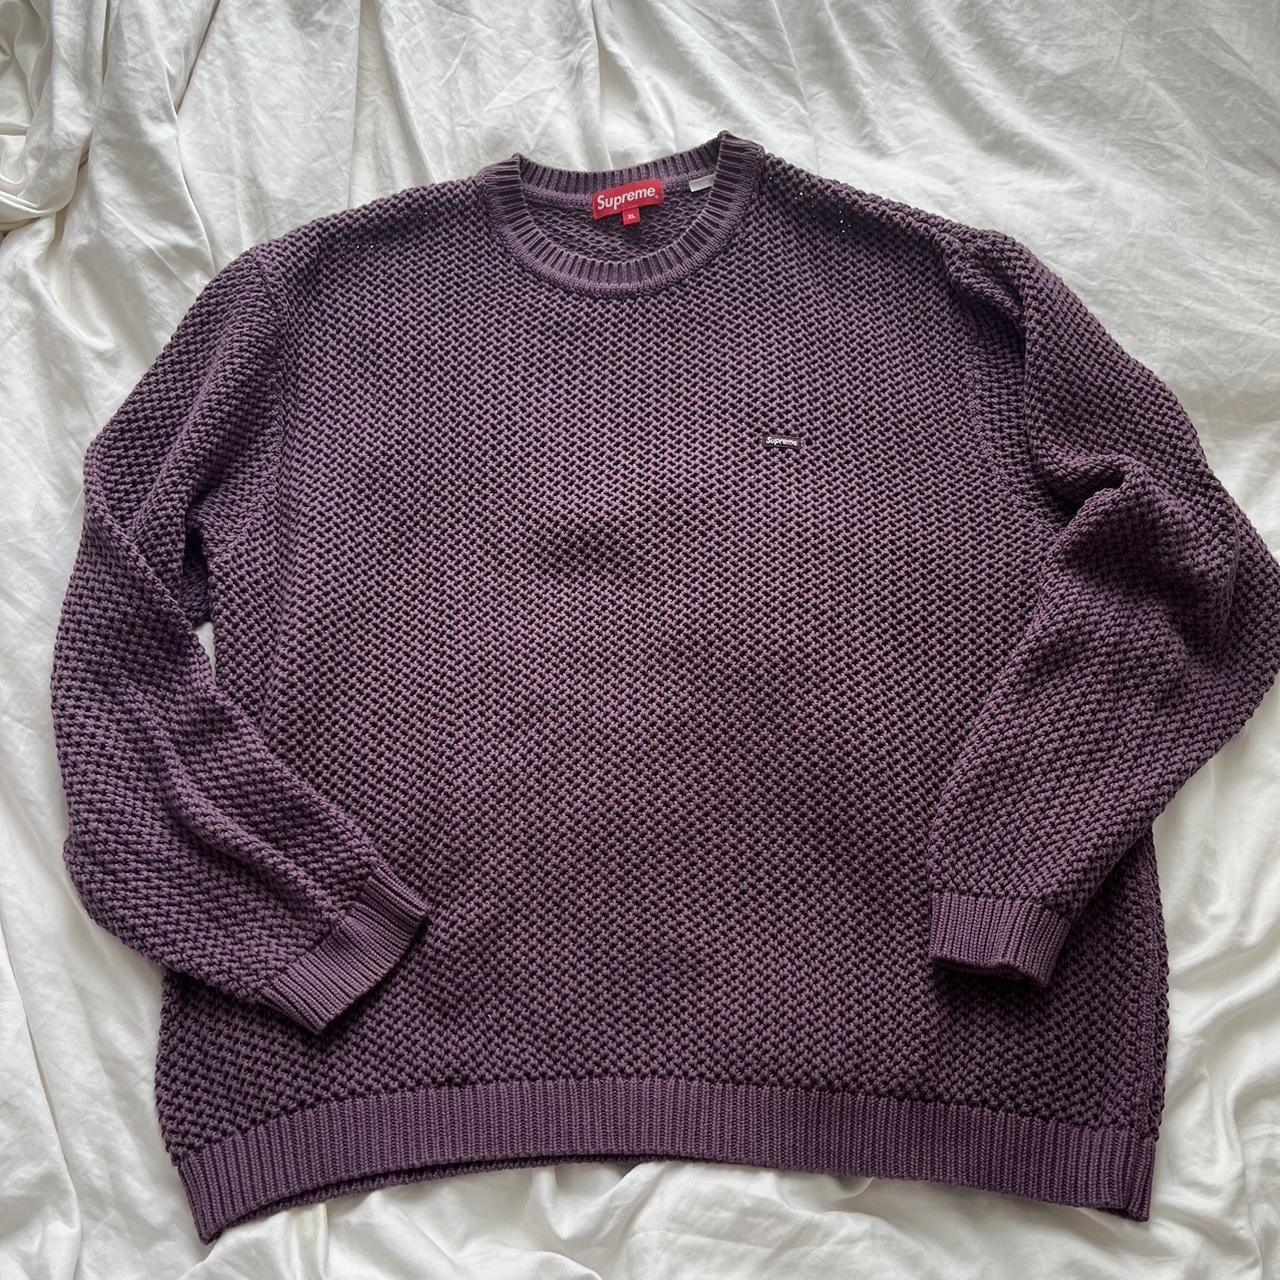 Supreme Open Knit Sweater Light Purple Size... - Depop